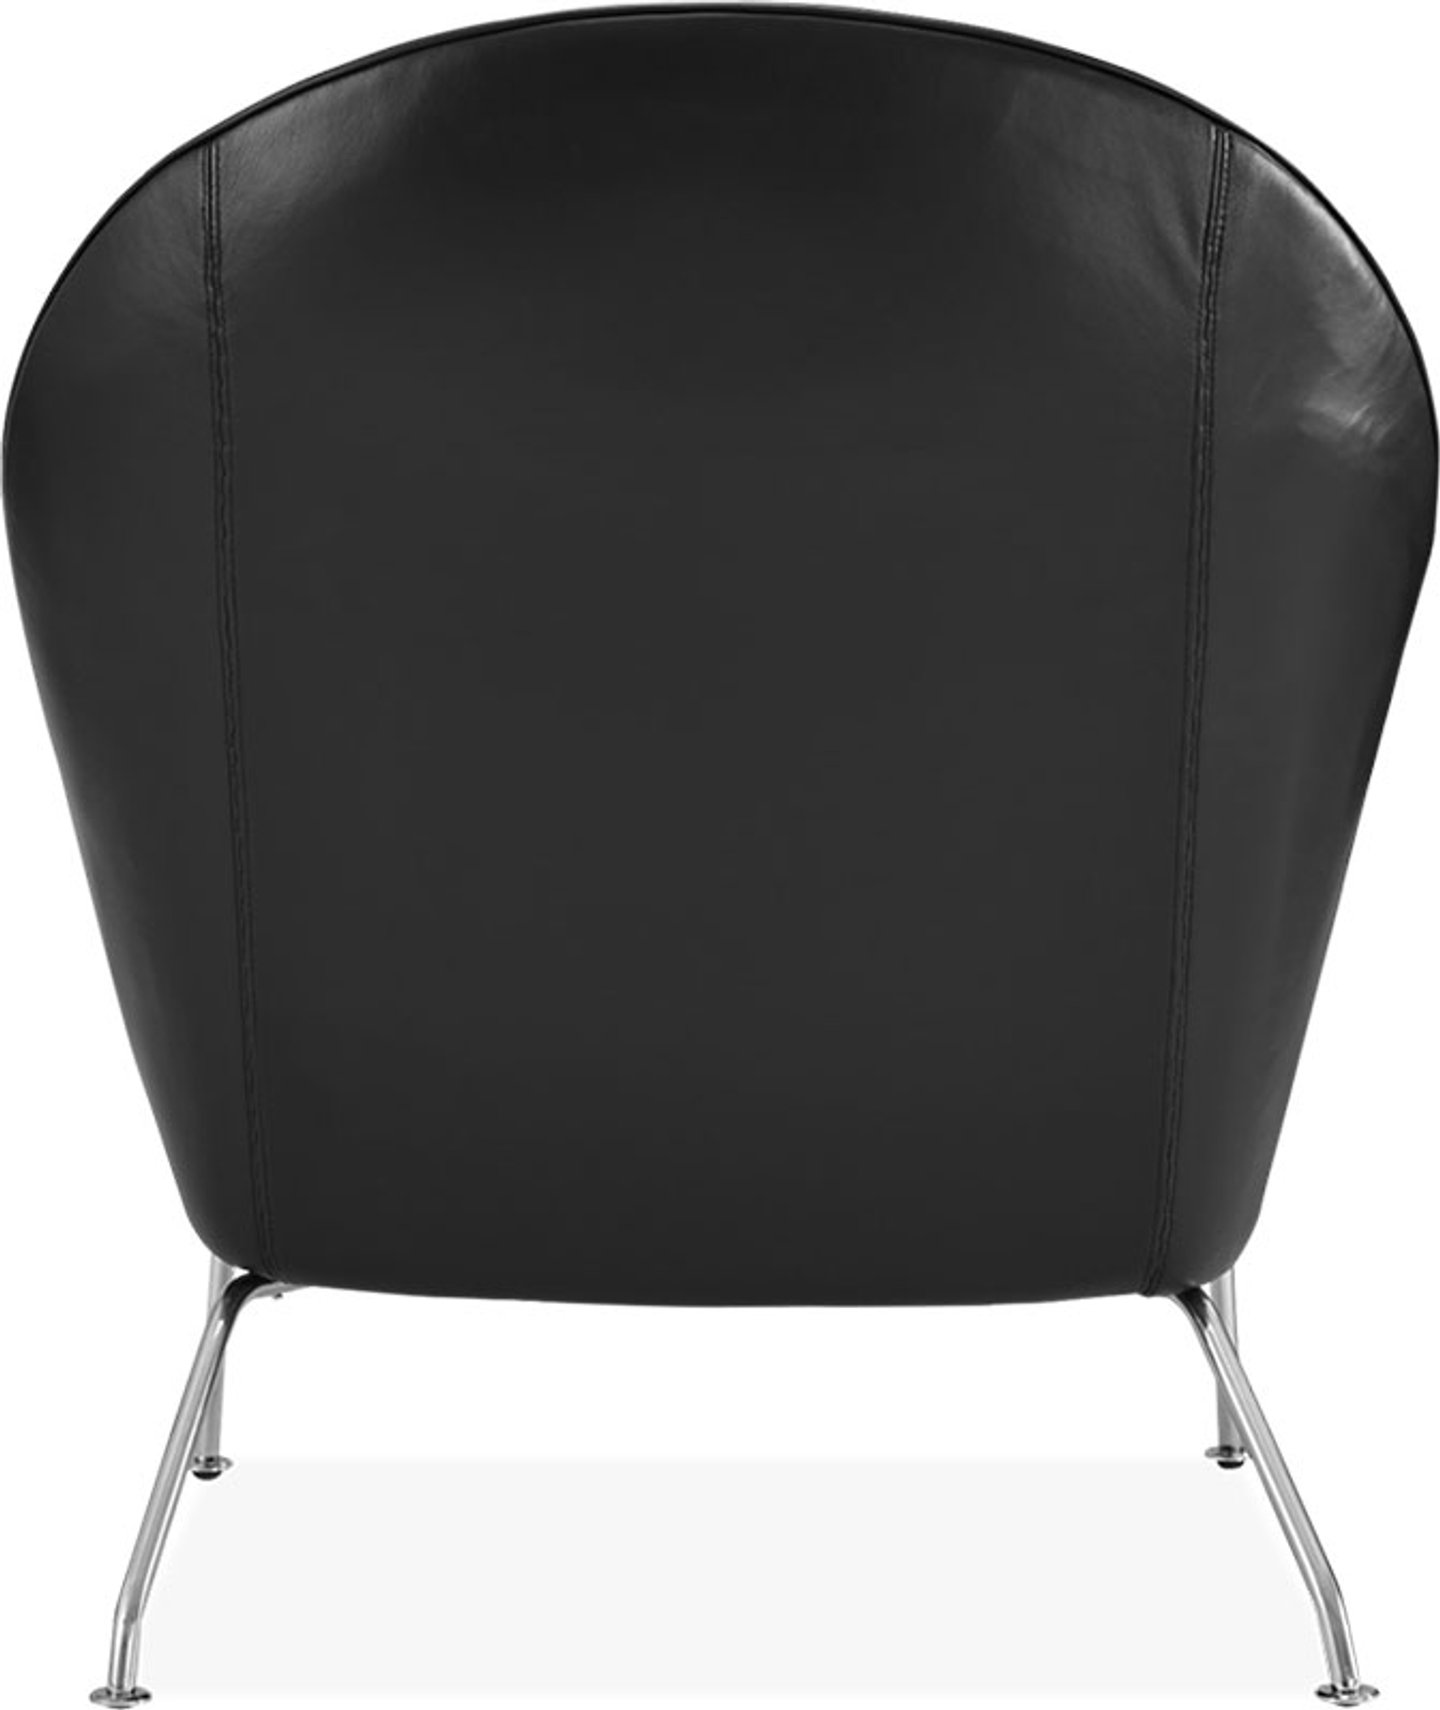 Oculus Stoel Premium Leather/Black  image.